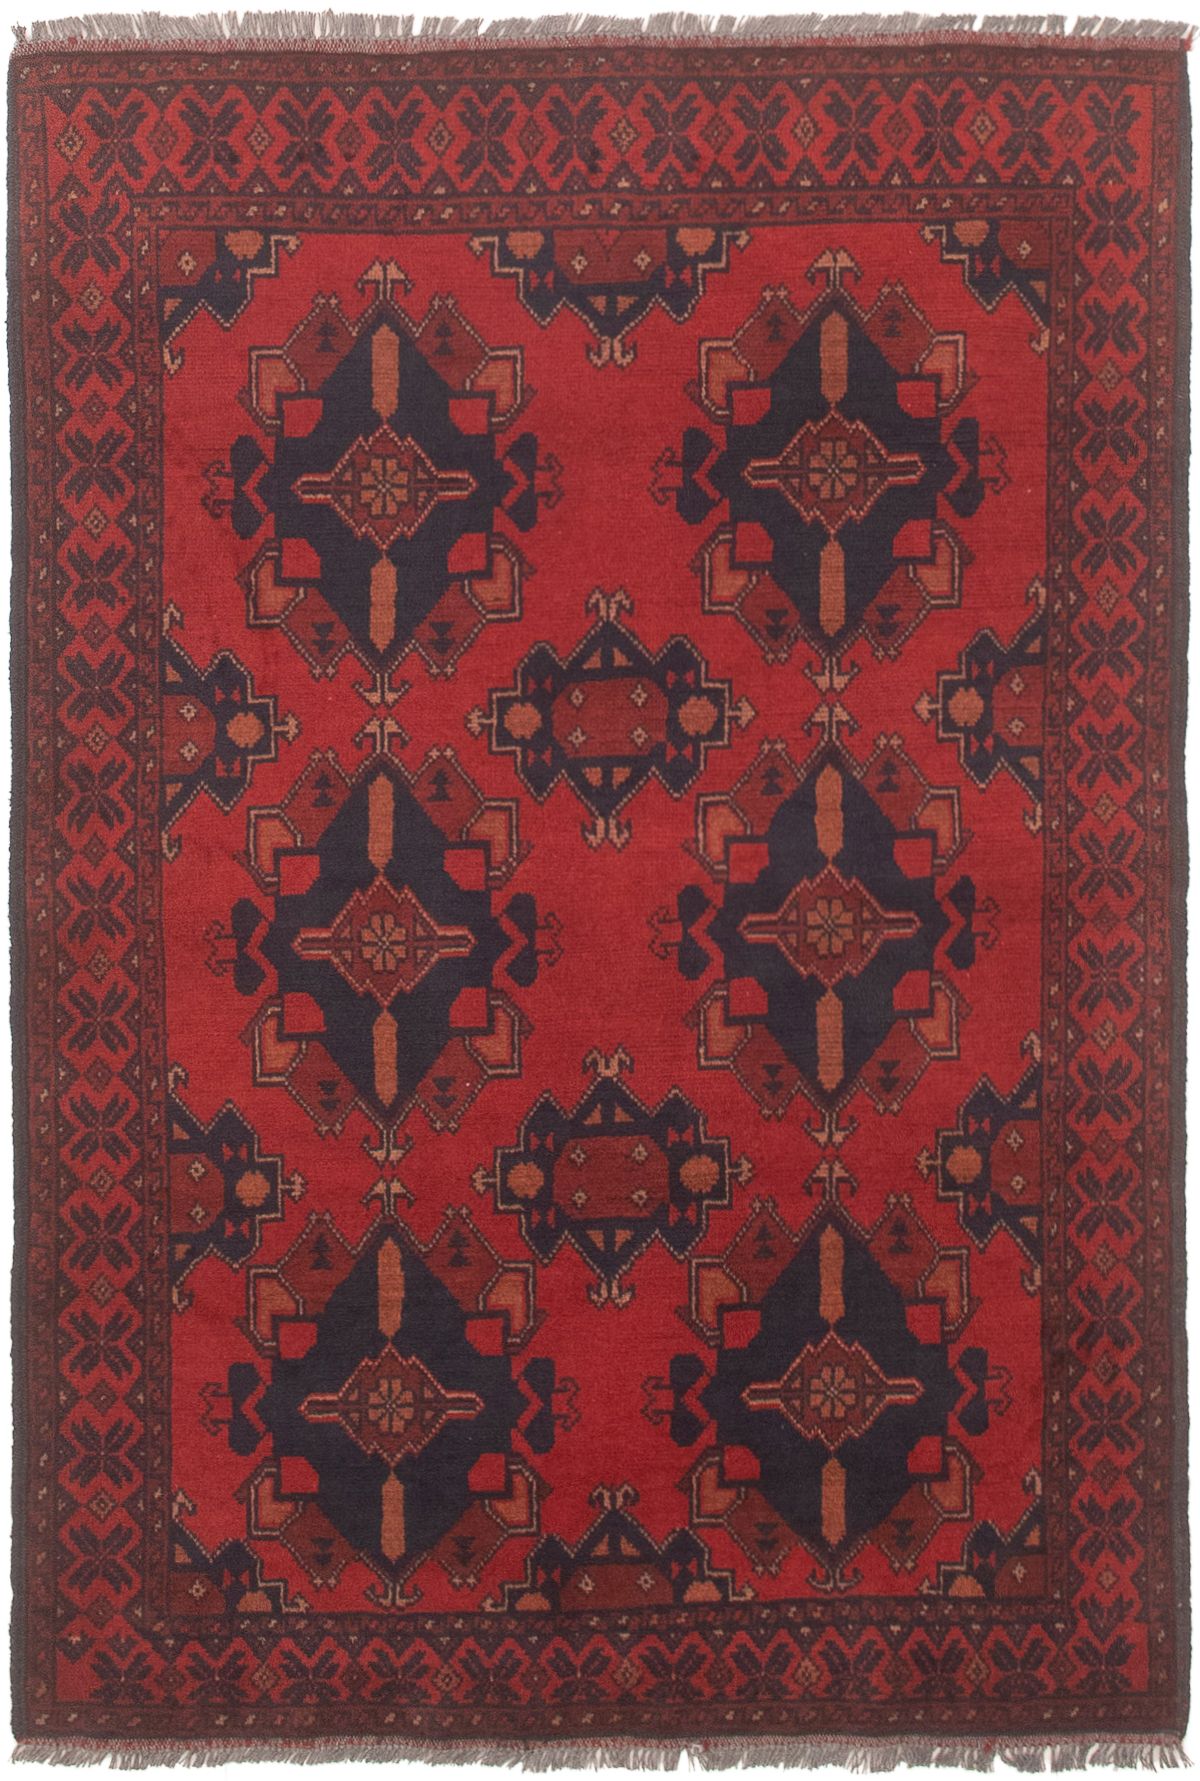 Hand-knotted Finest Khal Mohammadi Dark Navy, Dark Red Wool Rug 3'5" x 5'0" Size: 3'5" x 5'0"  